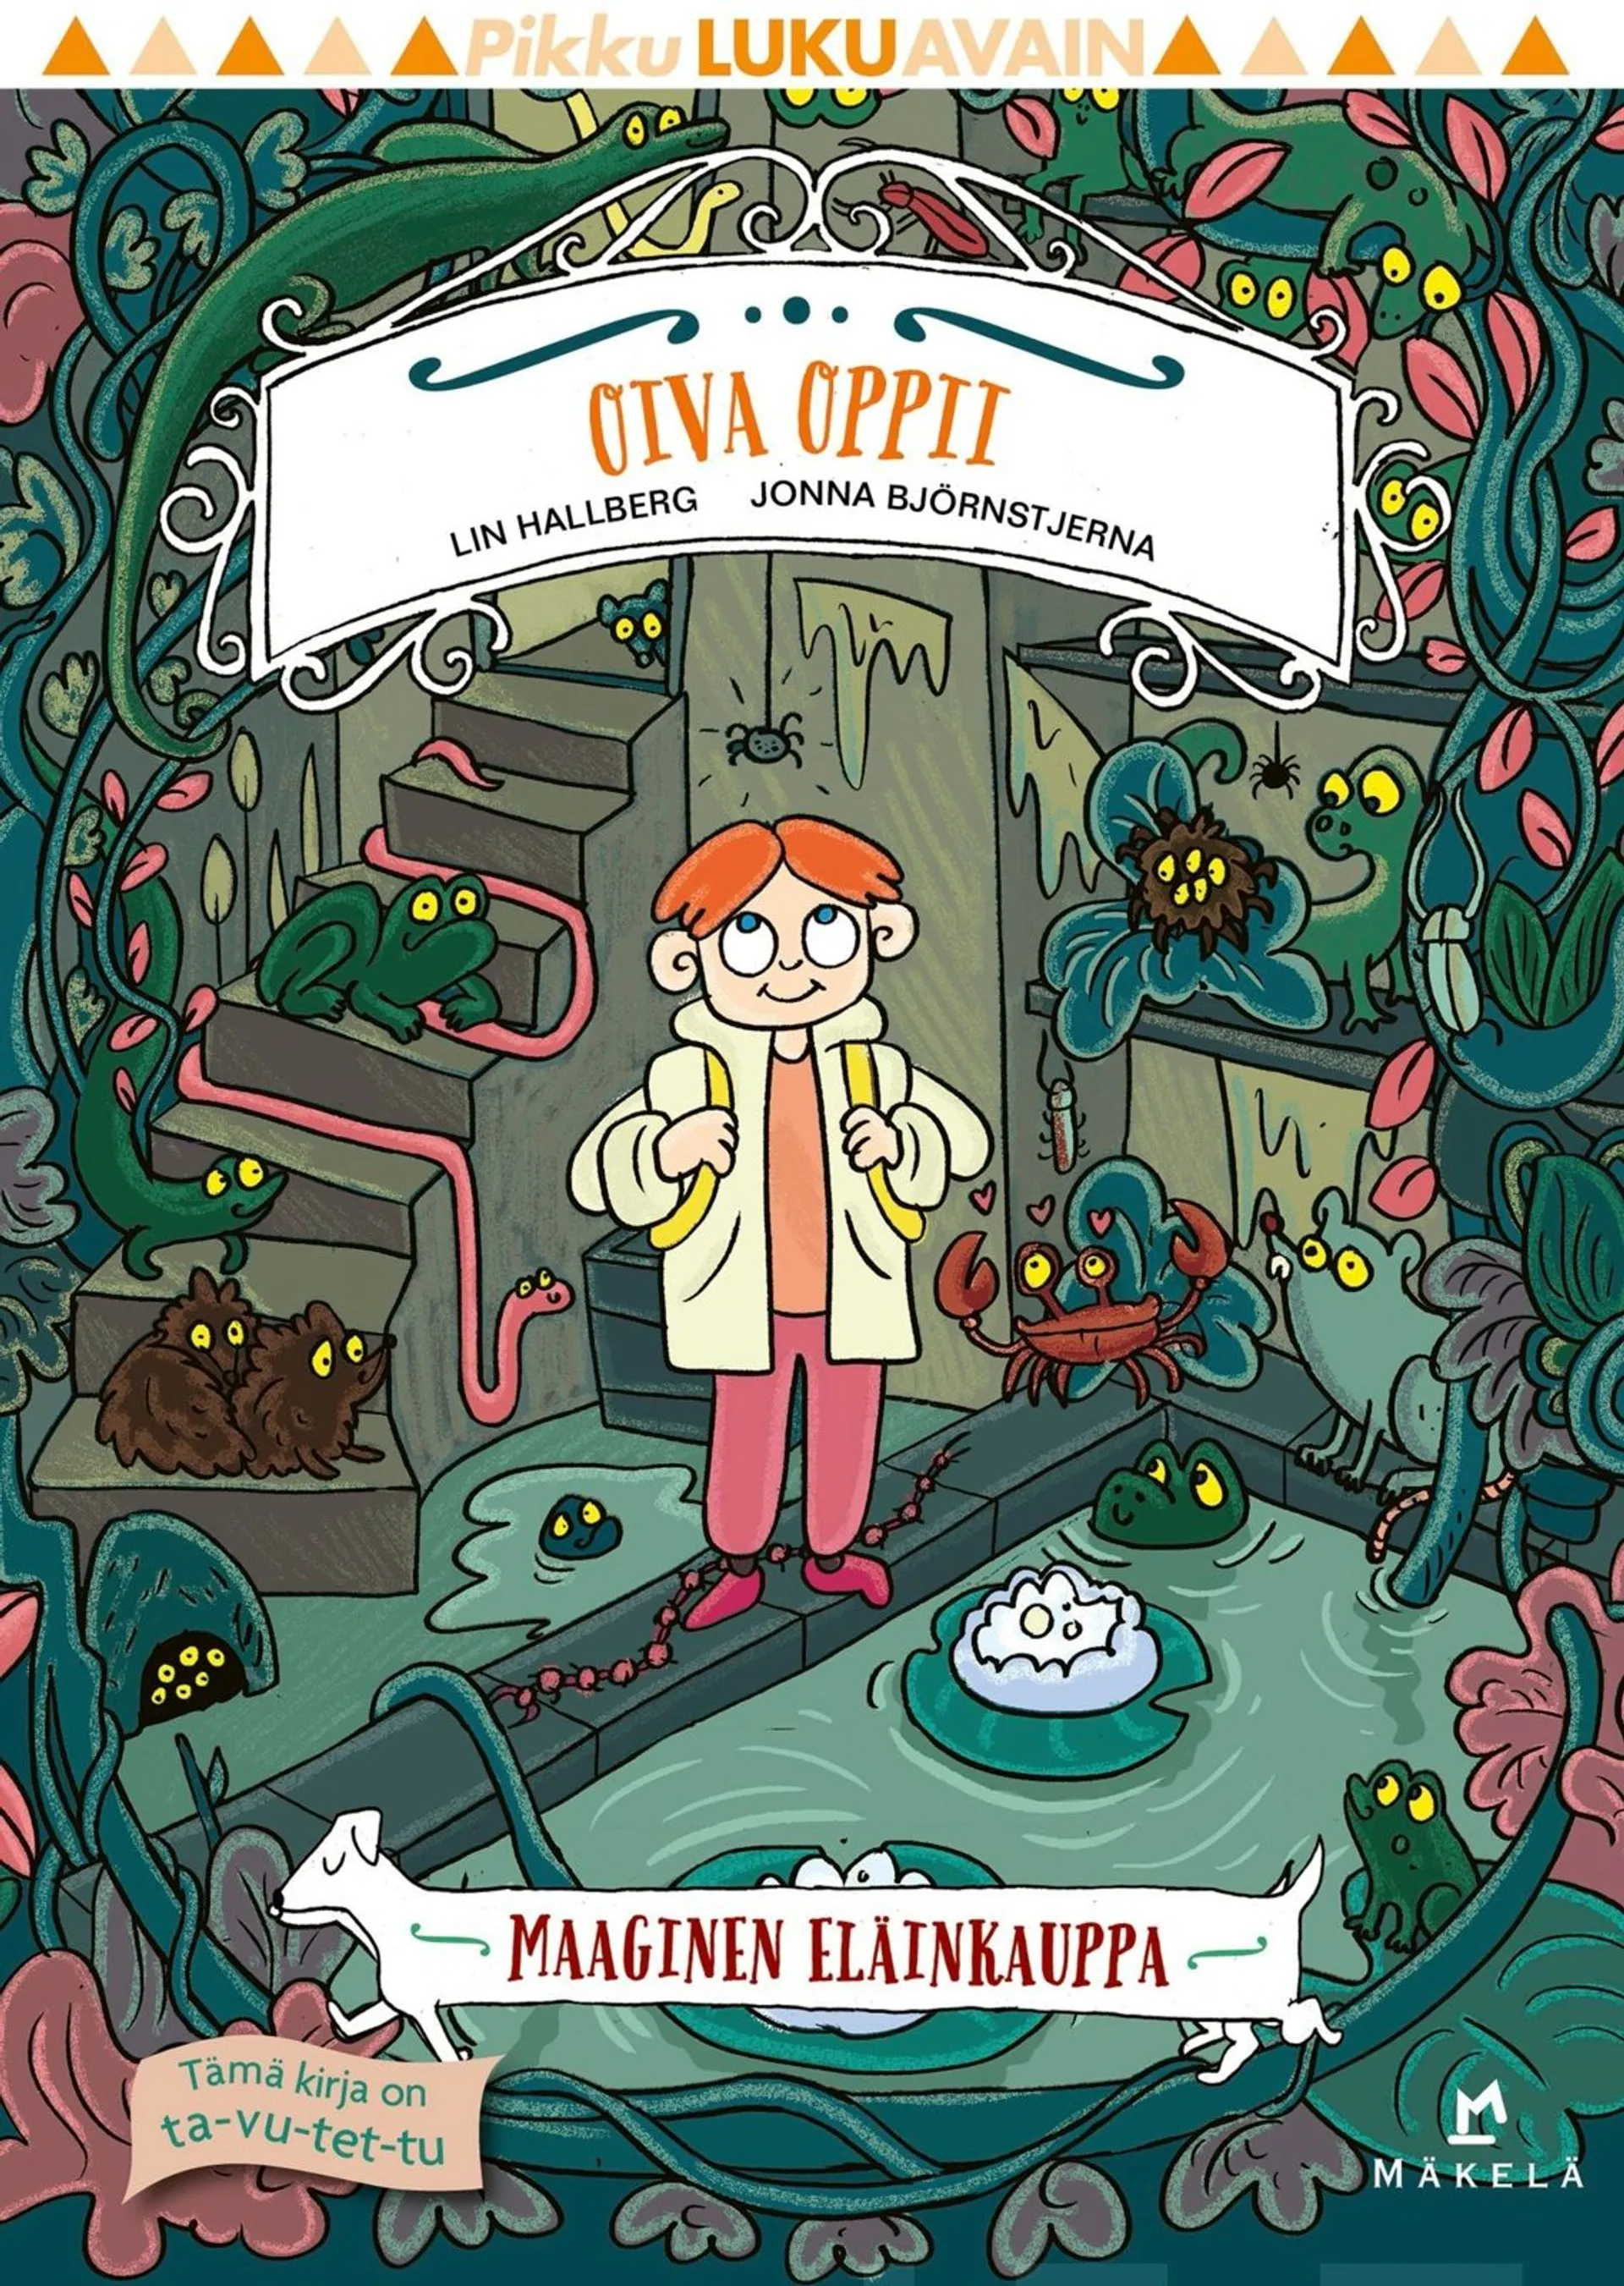 Hallberg, Oiva oppii - Extra lätt att läsa, Den magiska djuraffären